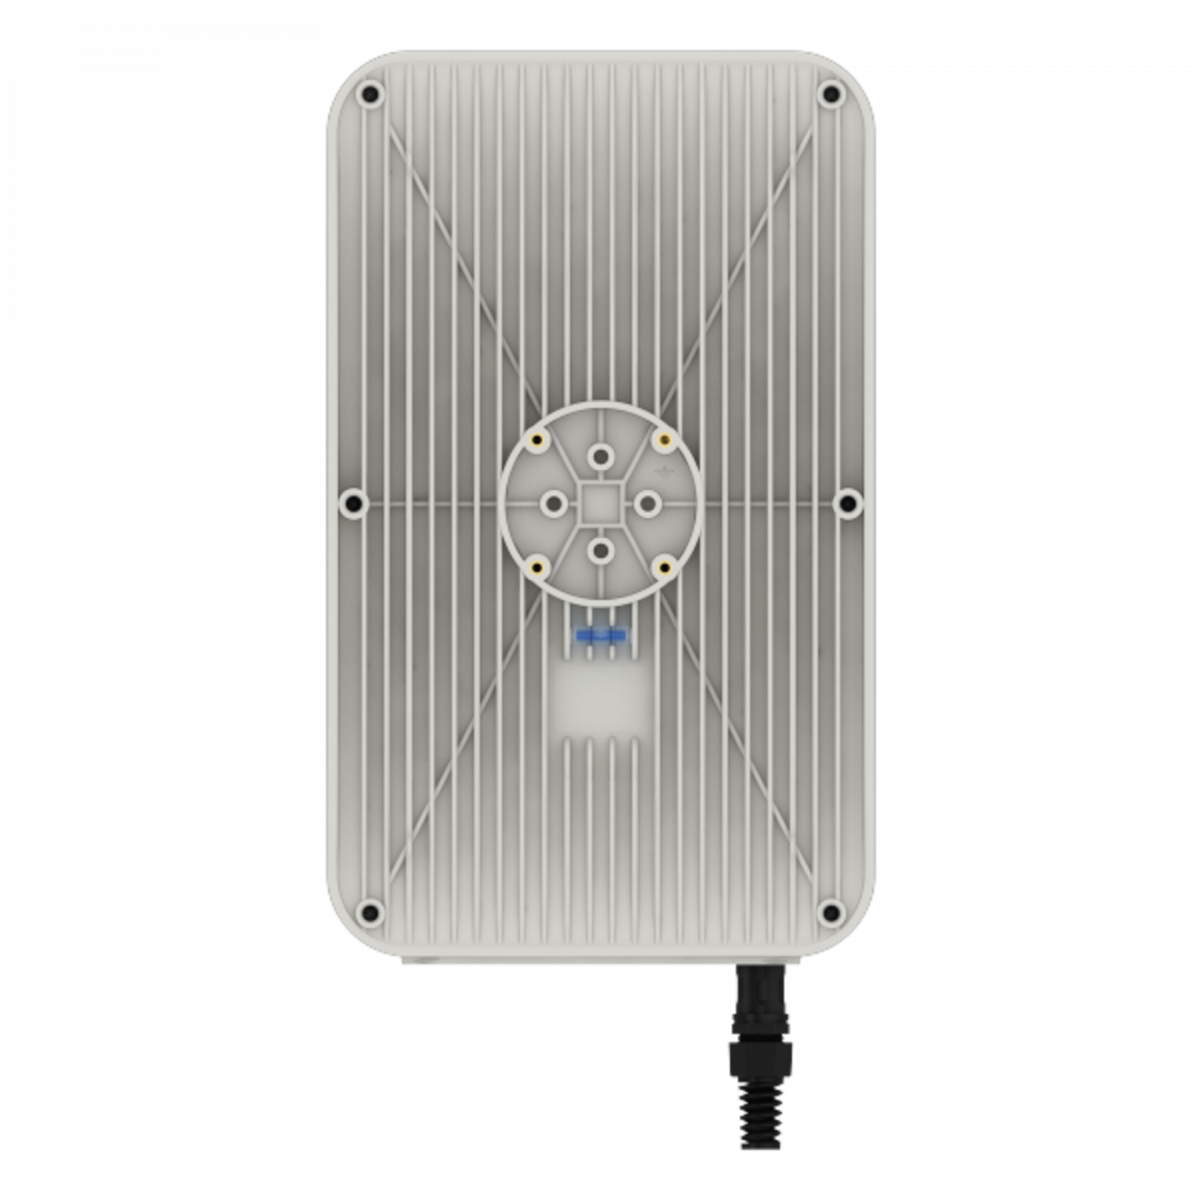 Антенна секторная WIBOX MIMO 2x2, 5.6-6.5 ГГц, 17dBi, 90°